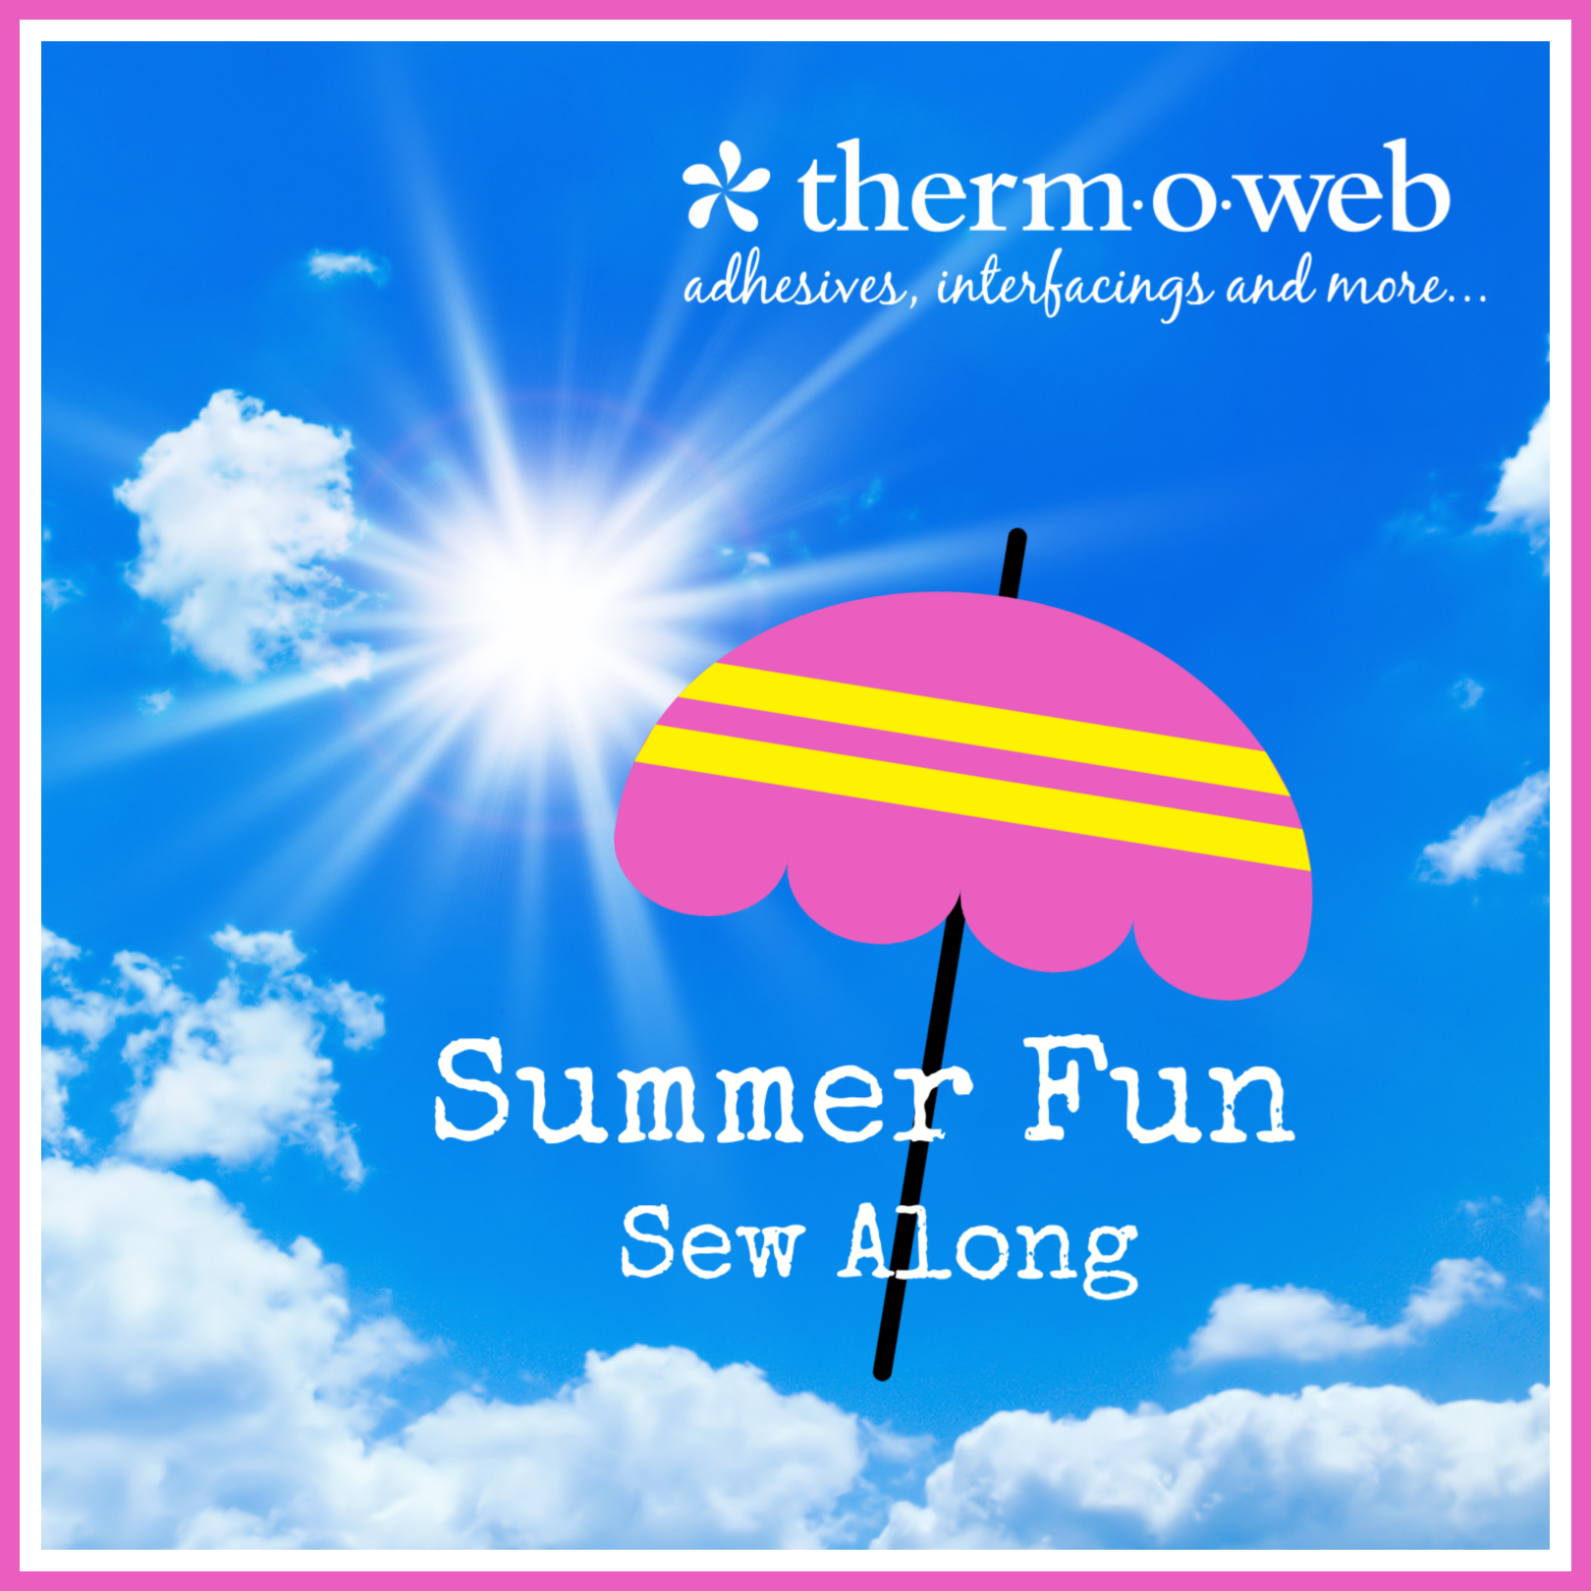 Summer Fun logo